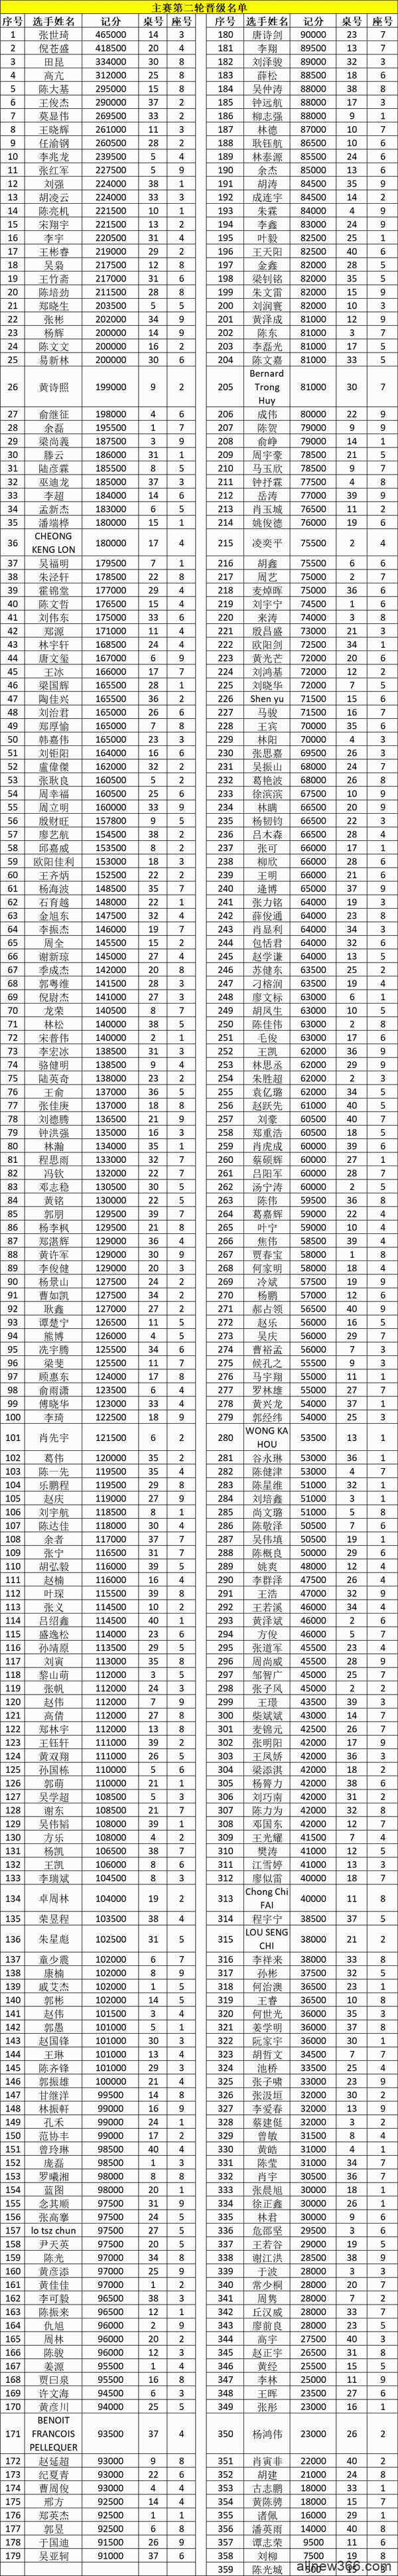 CPG横琴站 | 主赛共计1202人次参赛，倪苍盛成为主赛C组领先者！